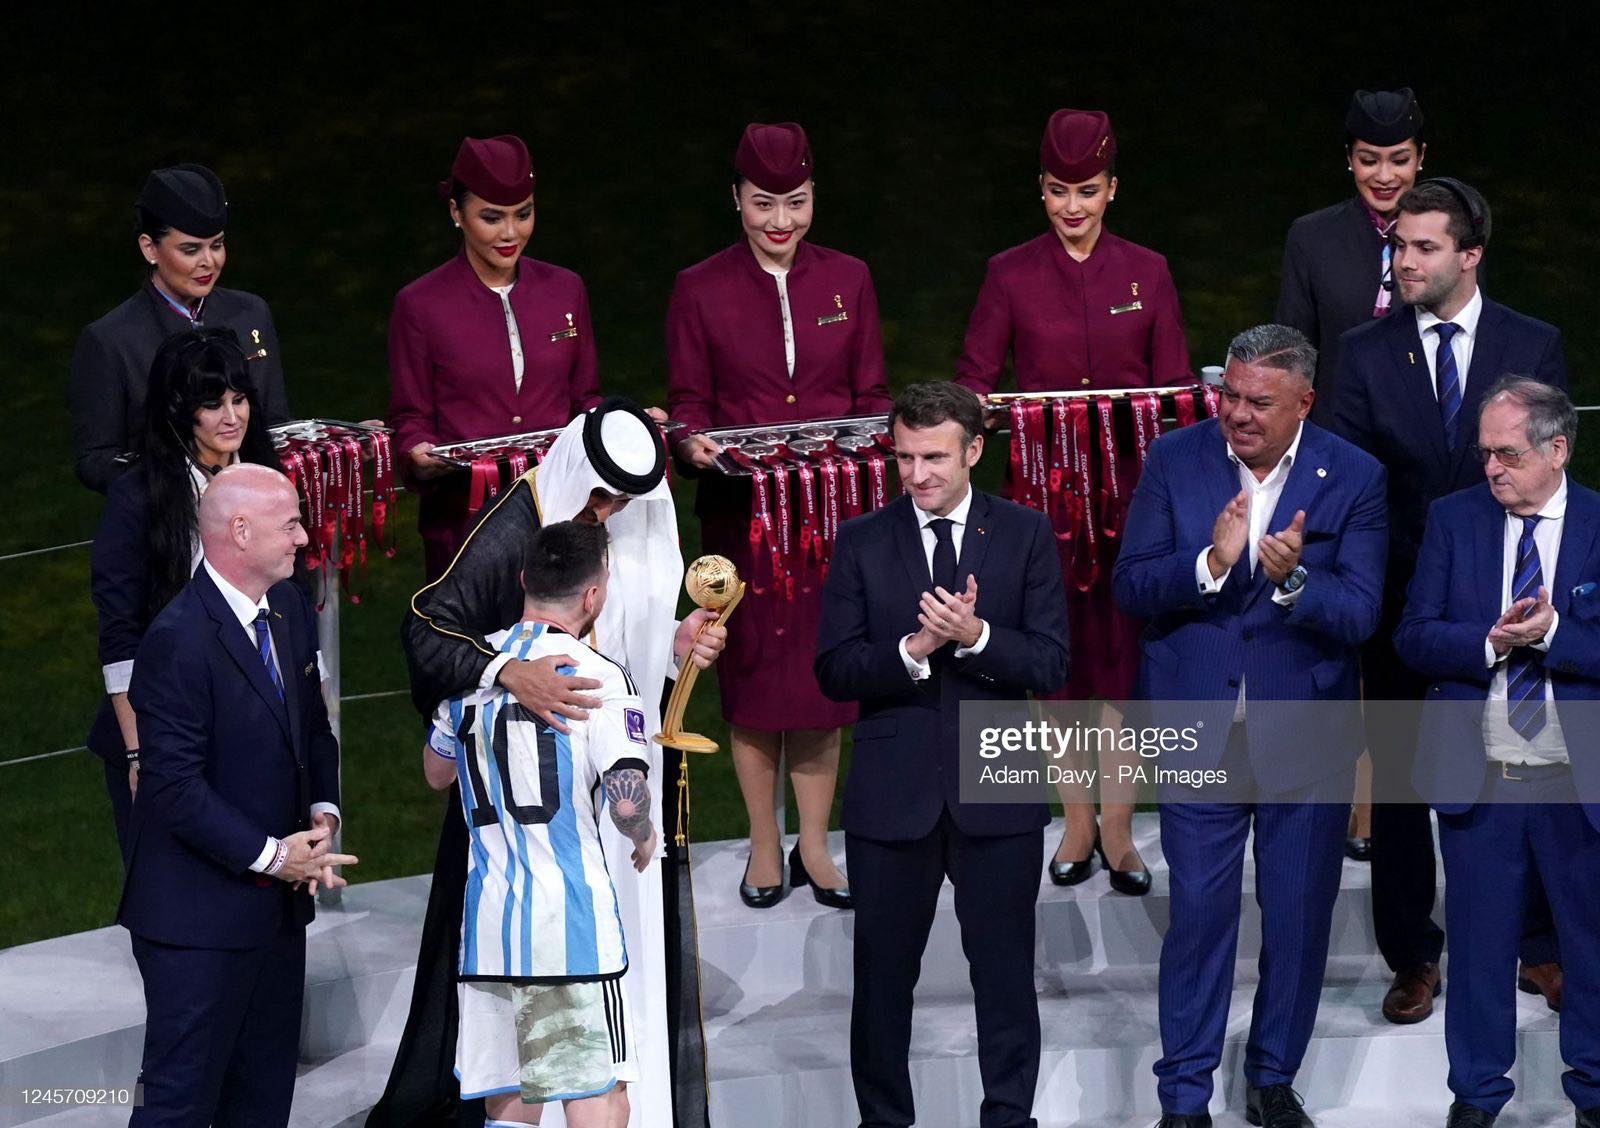 Nữ tiếp viên hàng không người Việt xuất hiện tại lễ trao giải World Cup: Mbappé khiêm tốn, Messi như toả hào quang - Ảnh 3.